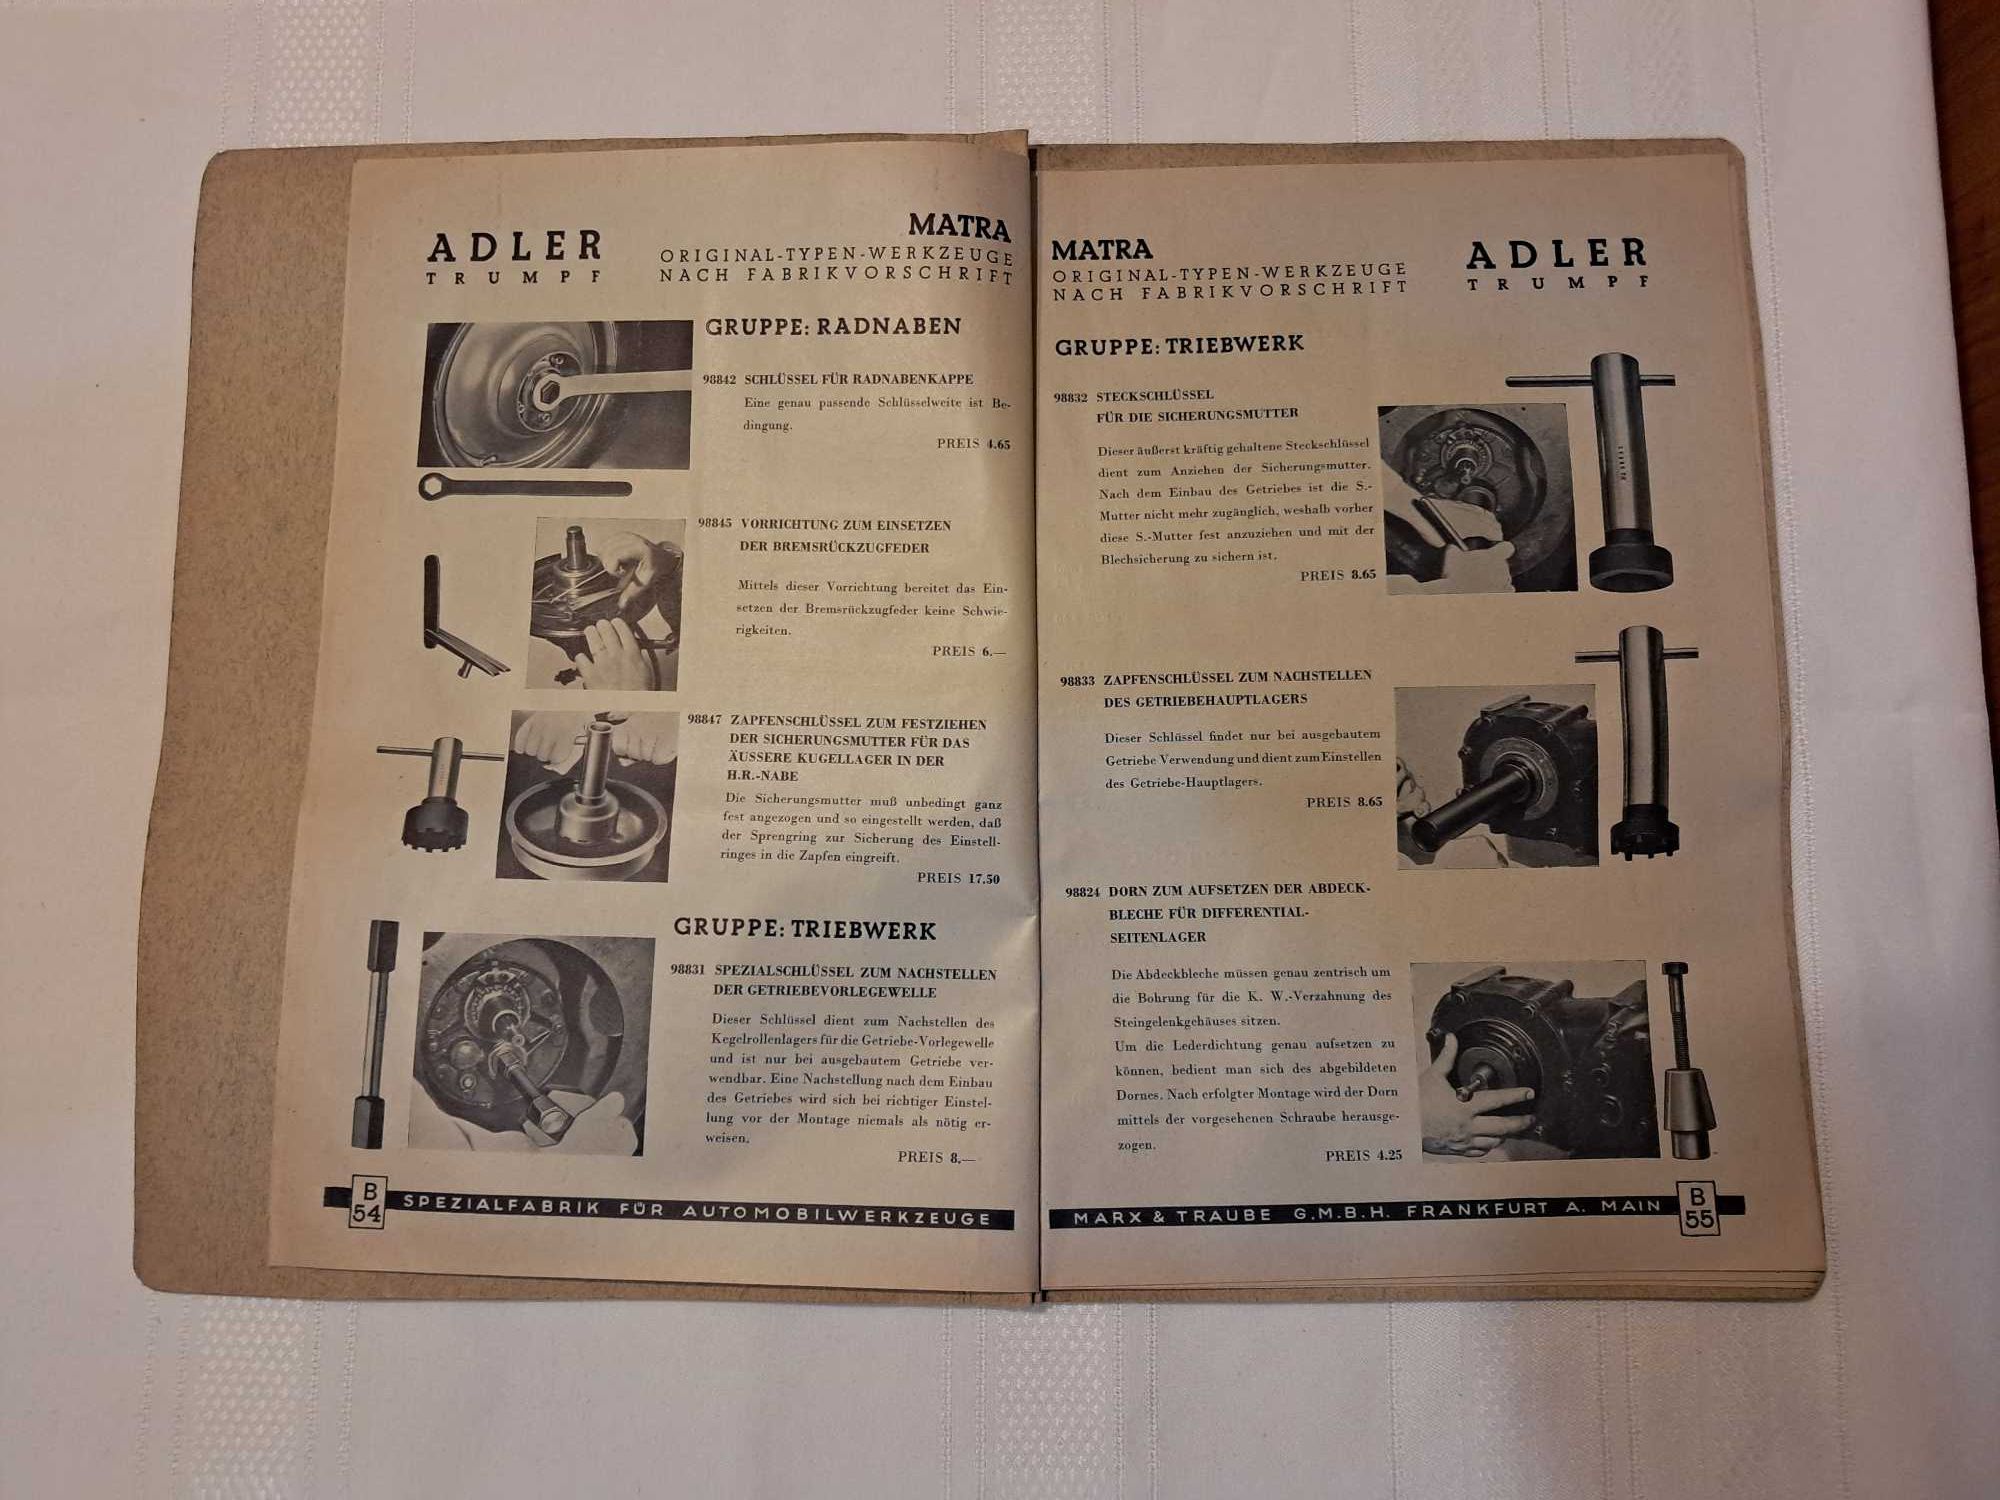 Katalog  MATRA - Adler Trumpf